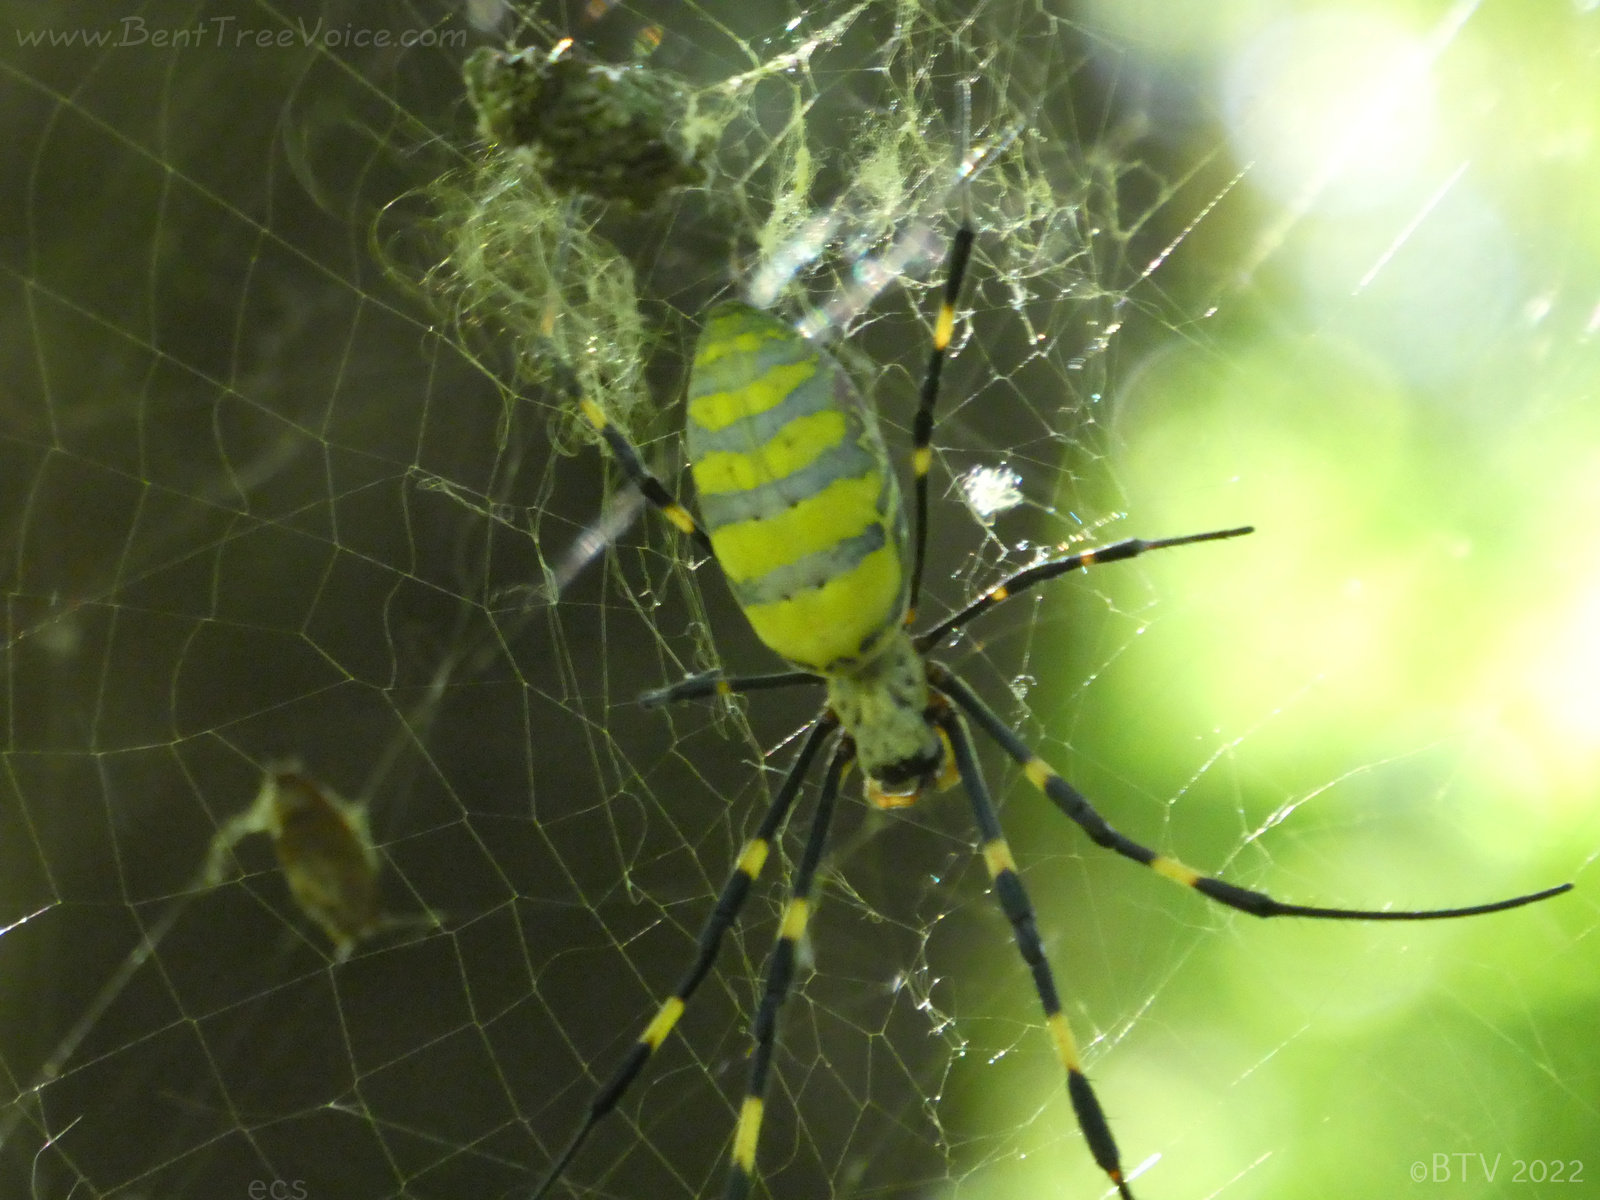 September 27, 2022 - Joro Spider in Bent Tree